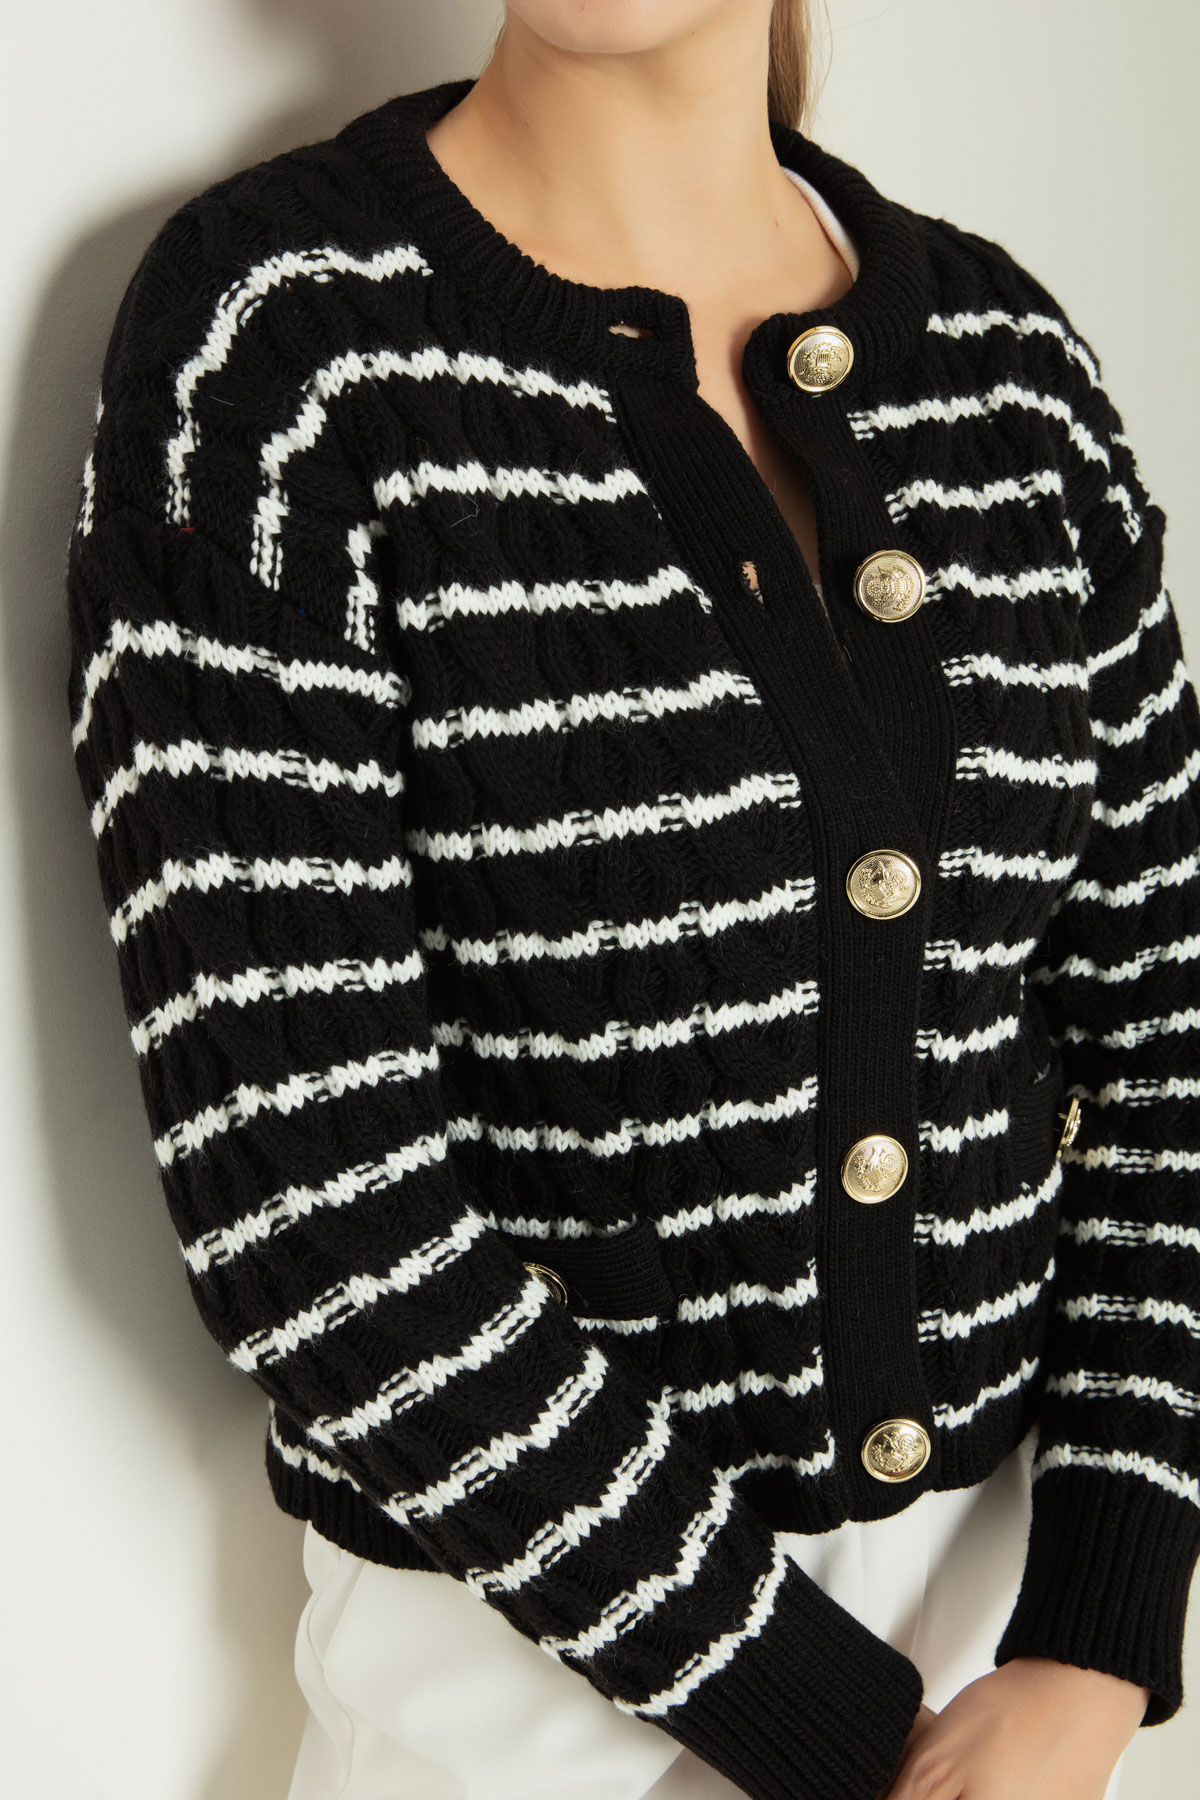 Women's Black Gold Buttoned Striped Knitwear Cardigan